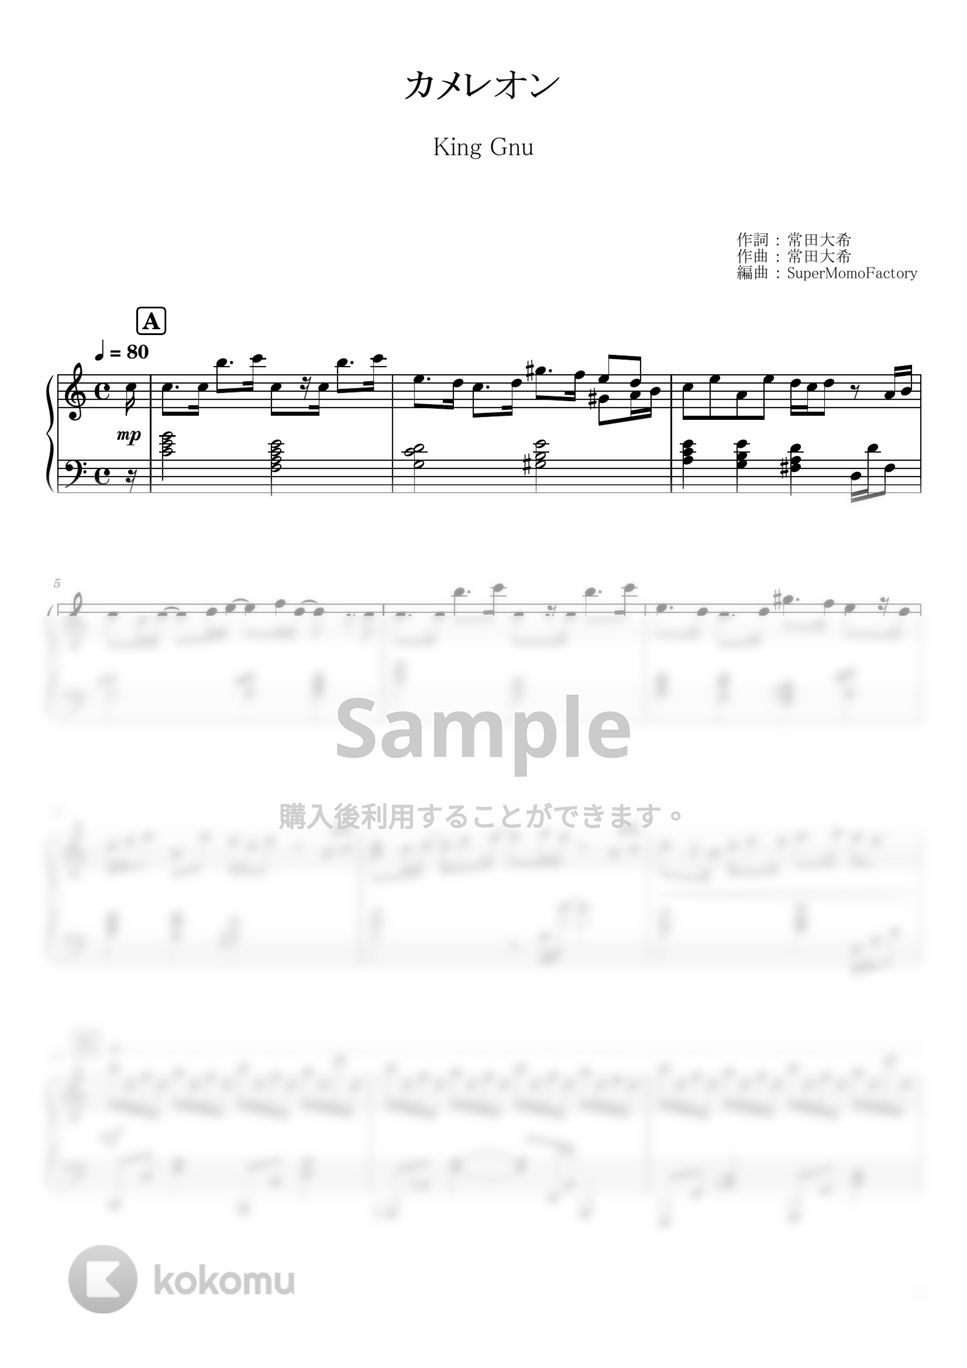 King Gnu - カメレオン (ピアノソロ / 中級～上級) by SuperMomoFactory